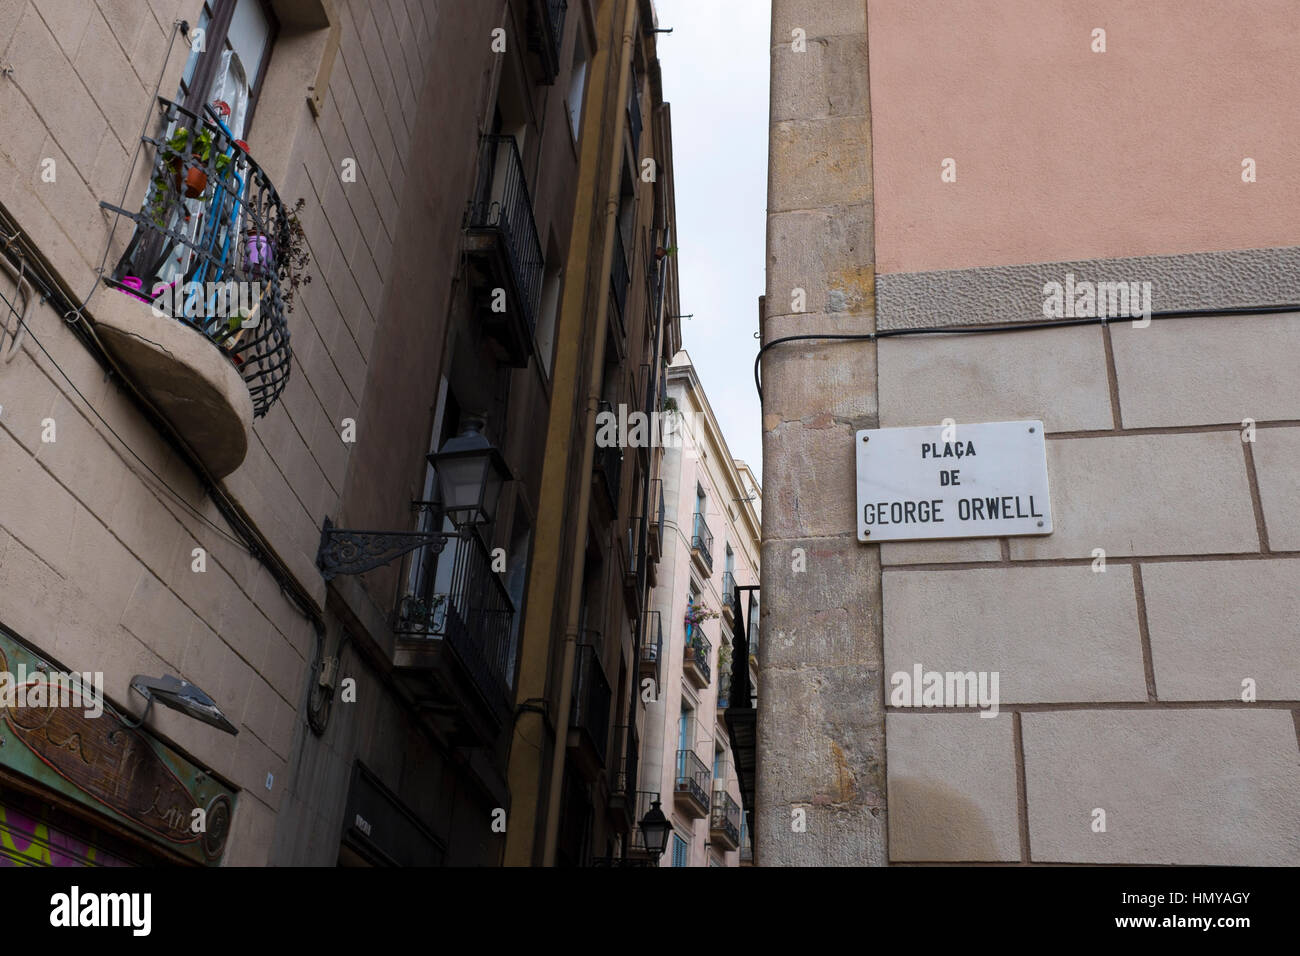 Placa de George Orwell, Barcelone, nommé en mars 1996 pour l'écrivain anglais d'Hommage à la Catalogne. Ironiquement, c'est la première place de la ville Banque D'Images